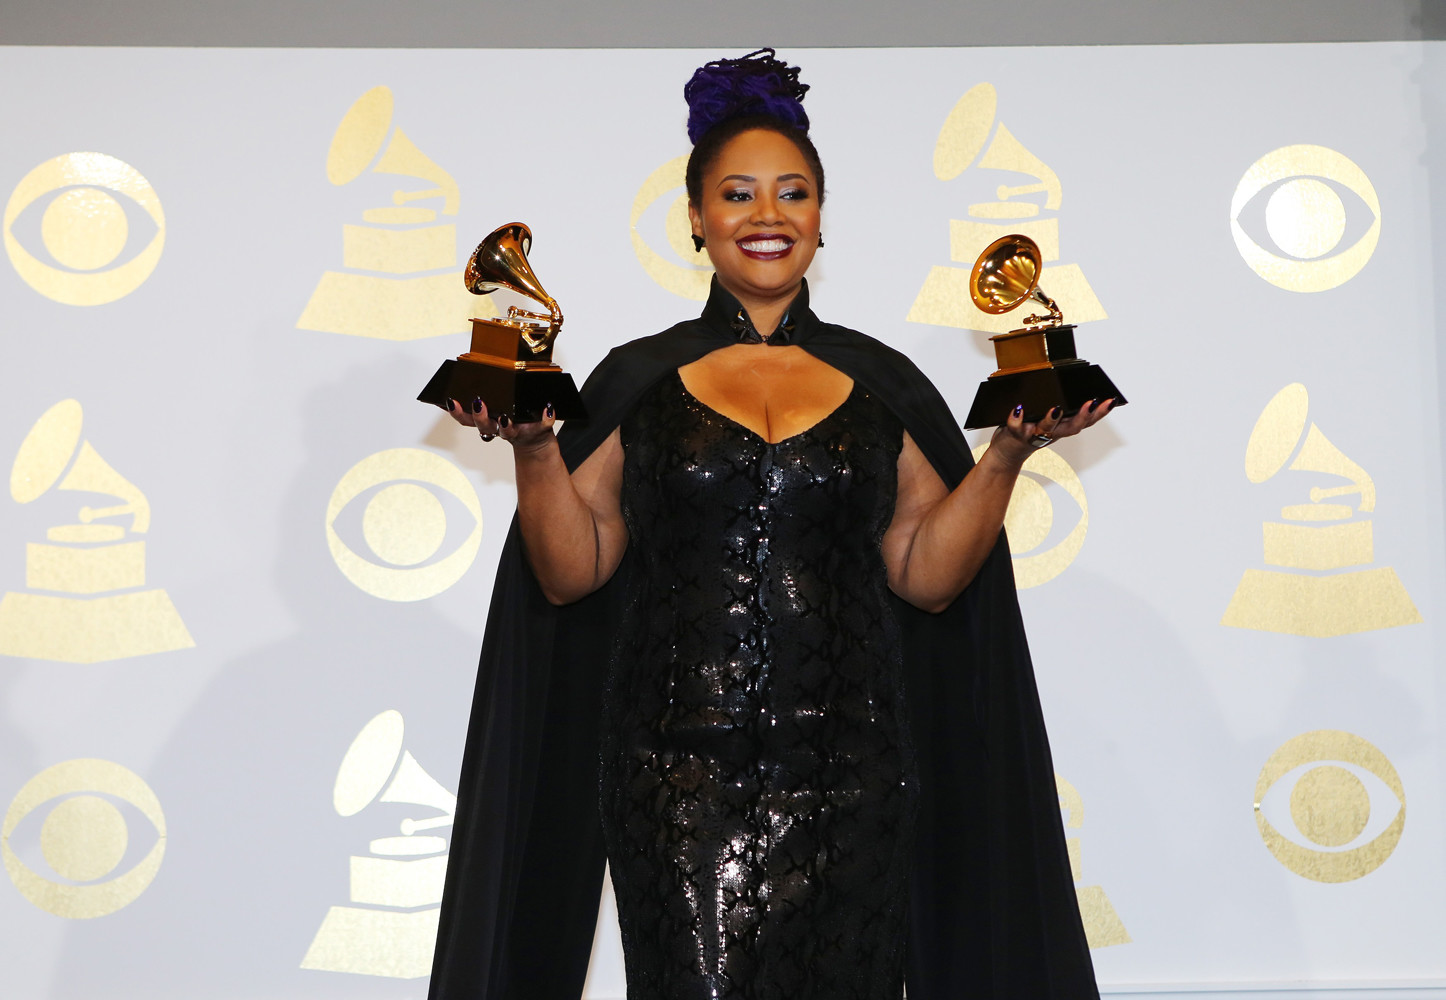 Лала Хэтэуэй получила две награды, в том числе за «Лучший R&B альбом»